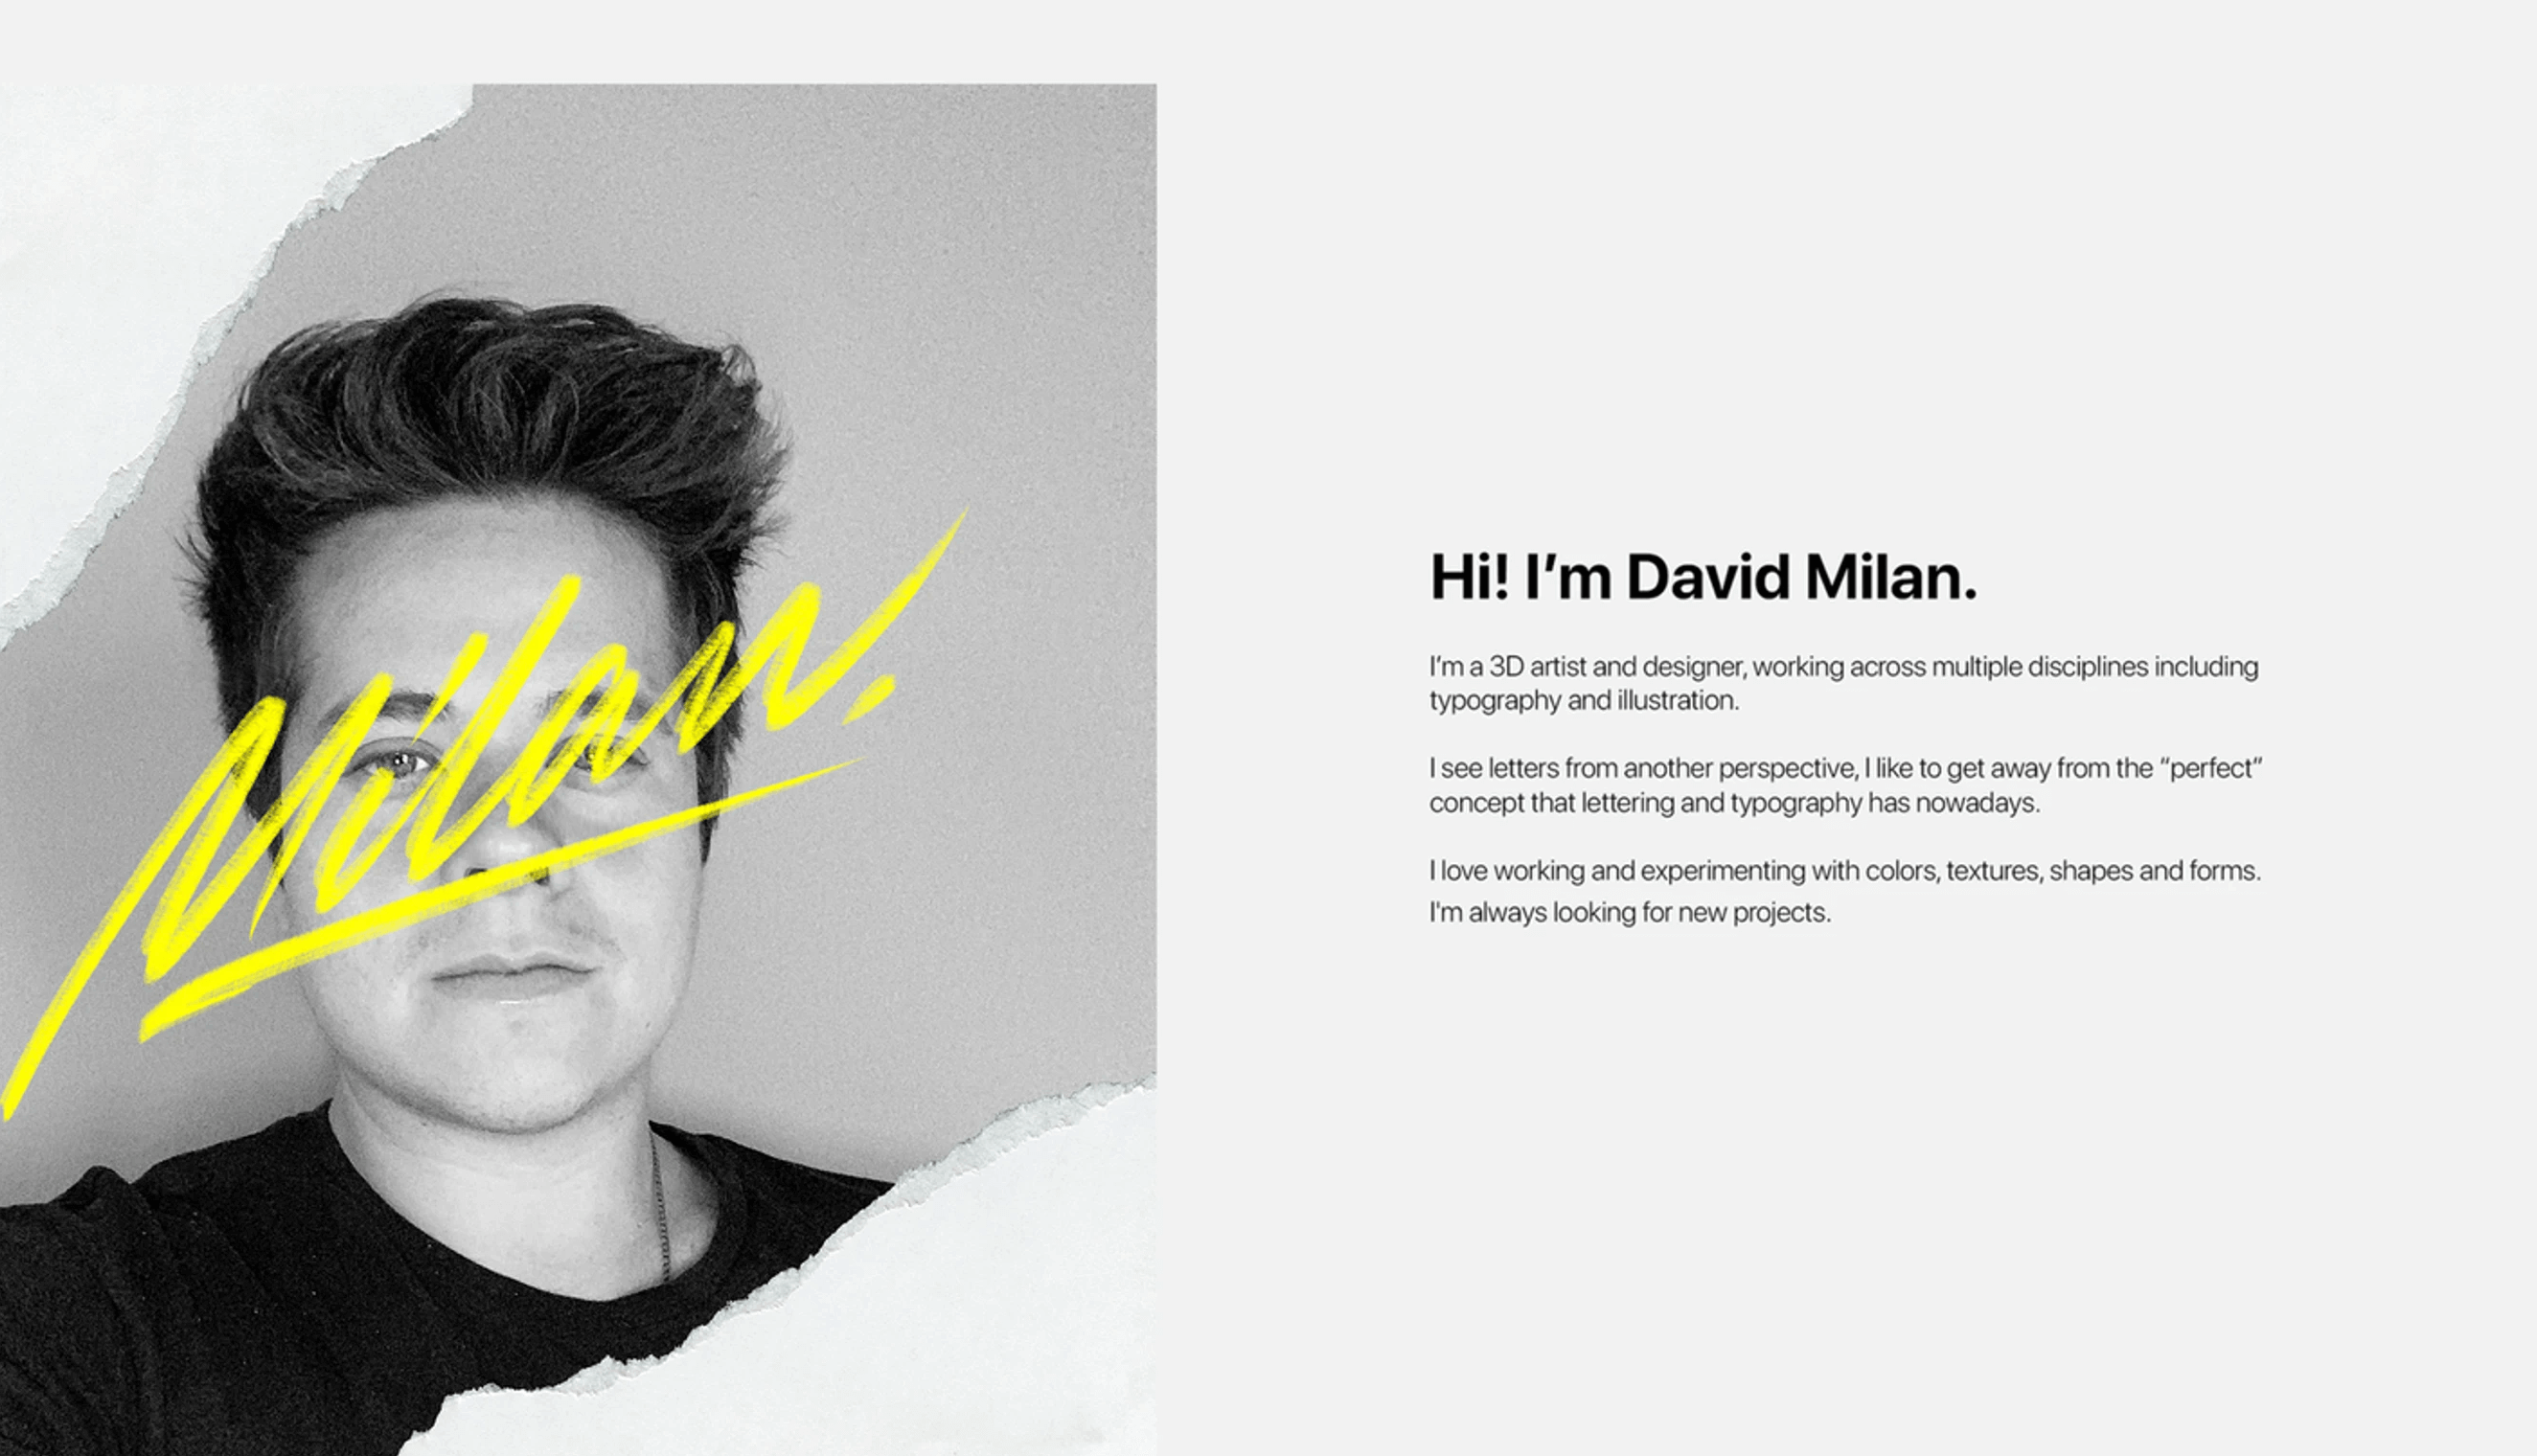 David Milan's about page